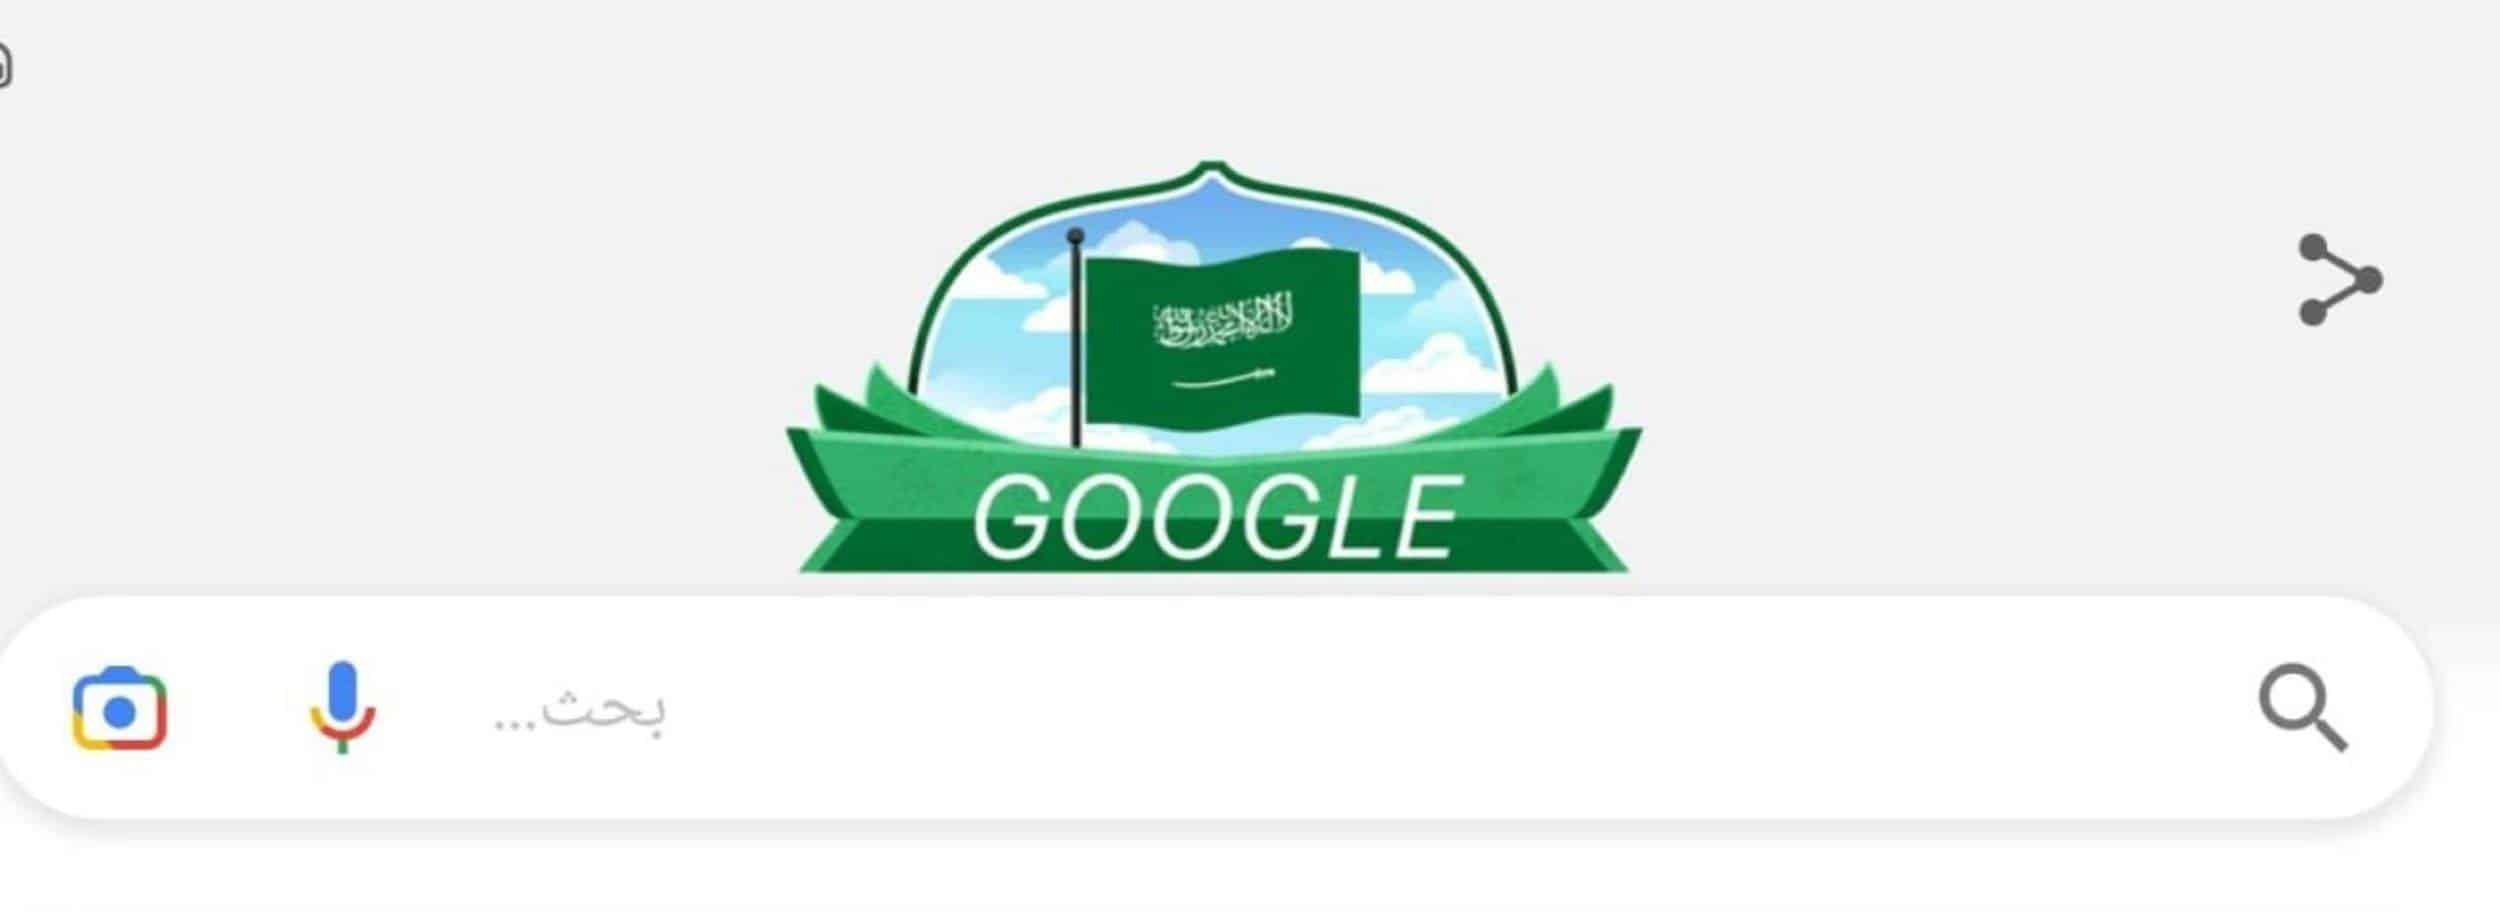 جوجل يحول خلفيته خضراء احتفالا باليوم الوطني السعودي الـ91